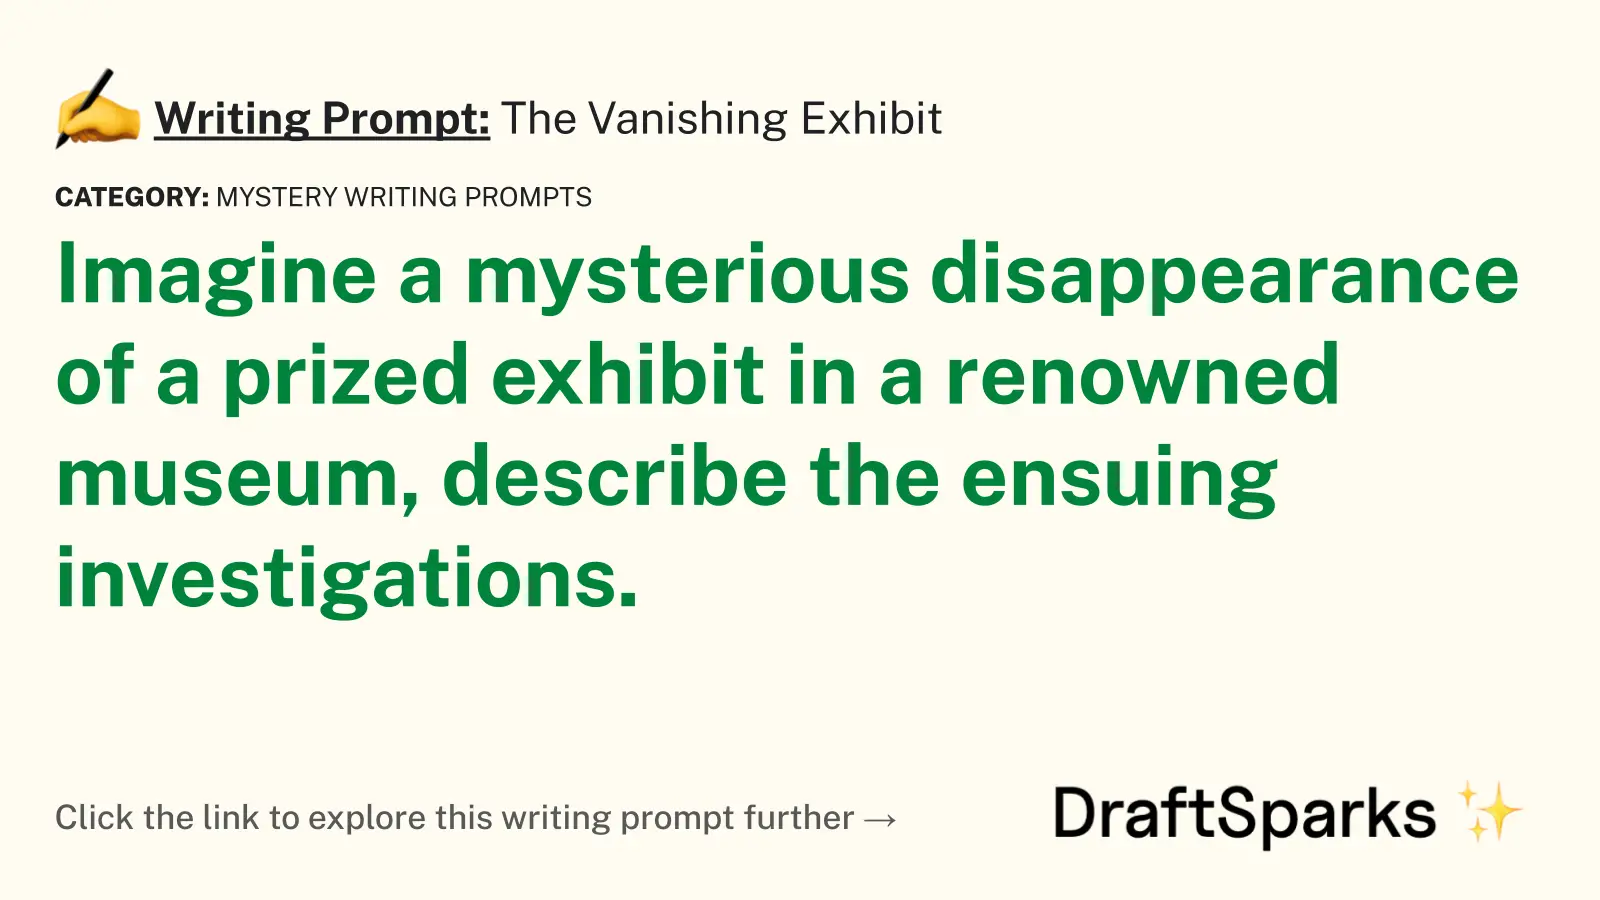 The Vanishing Exhibit